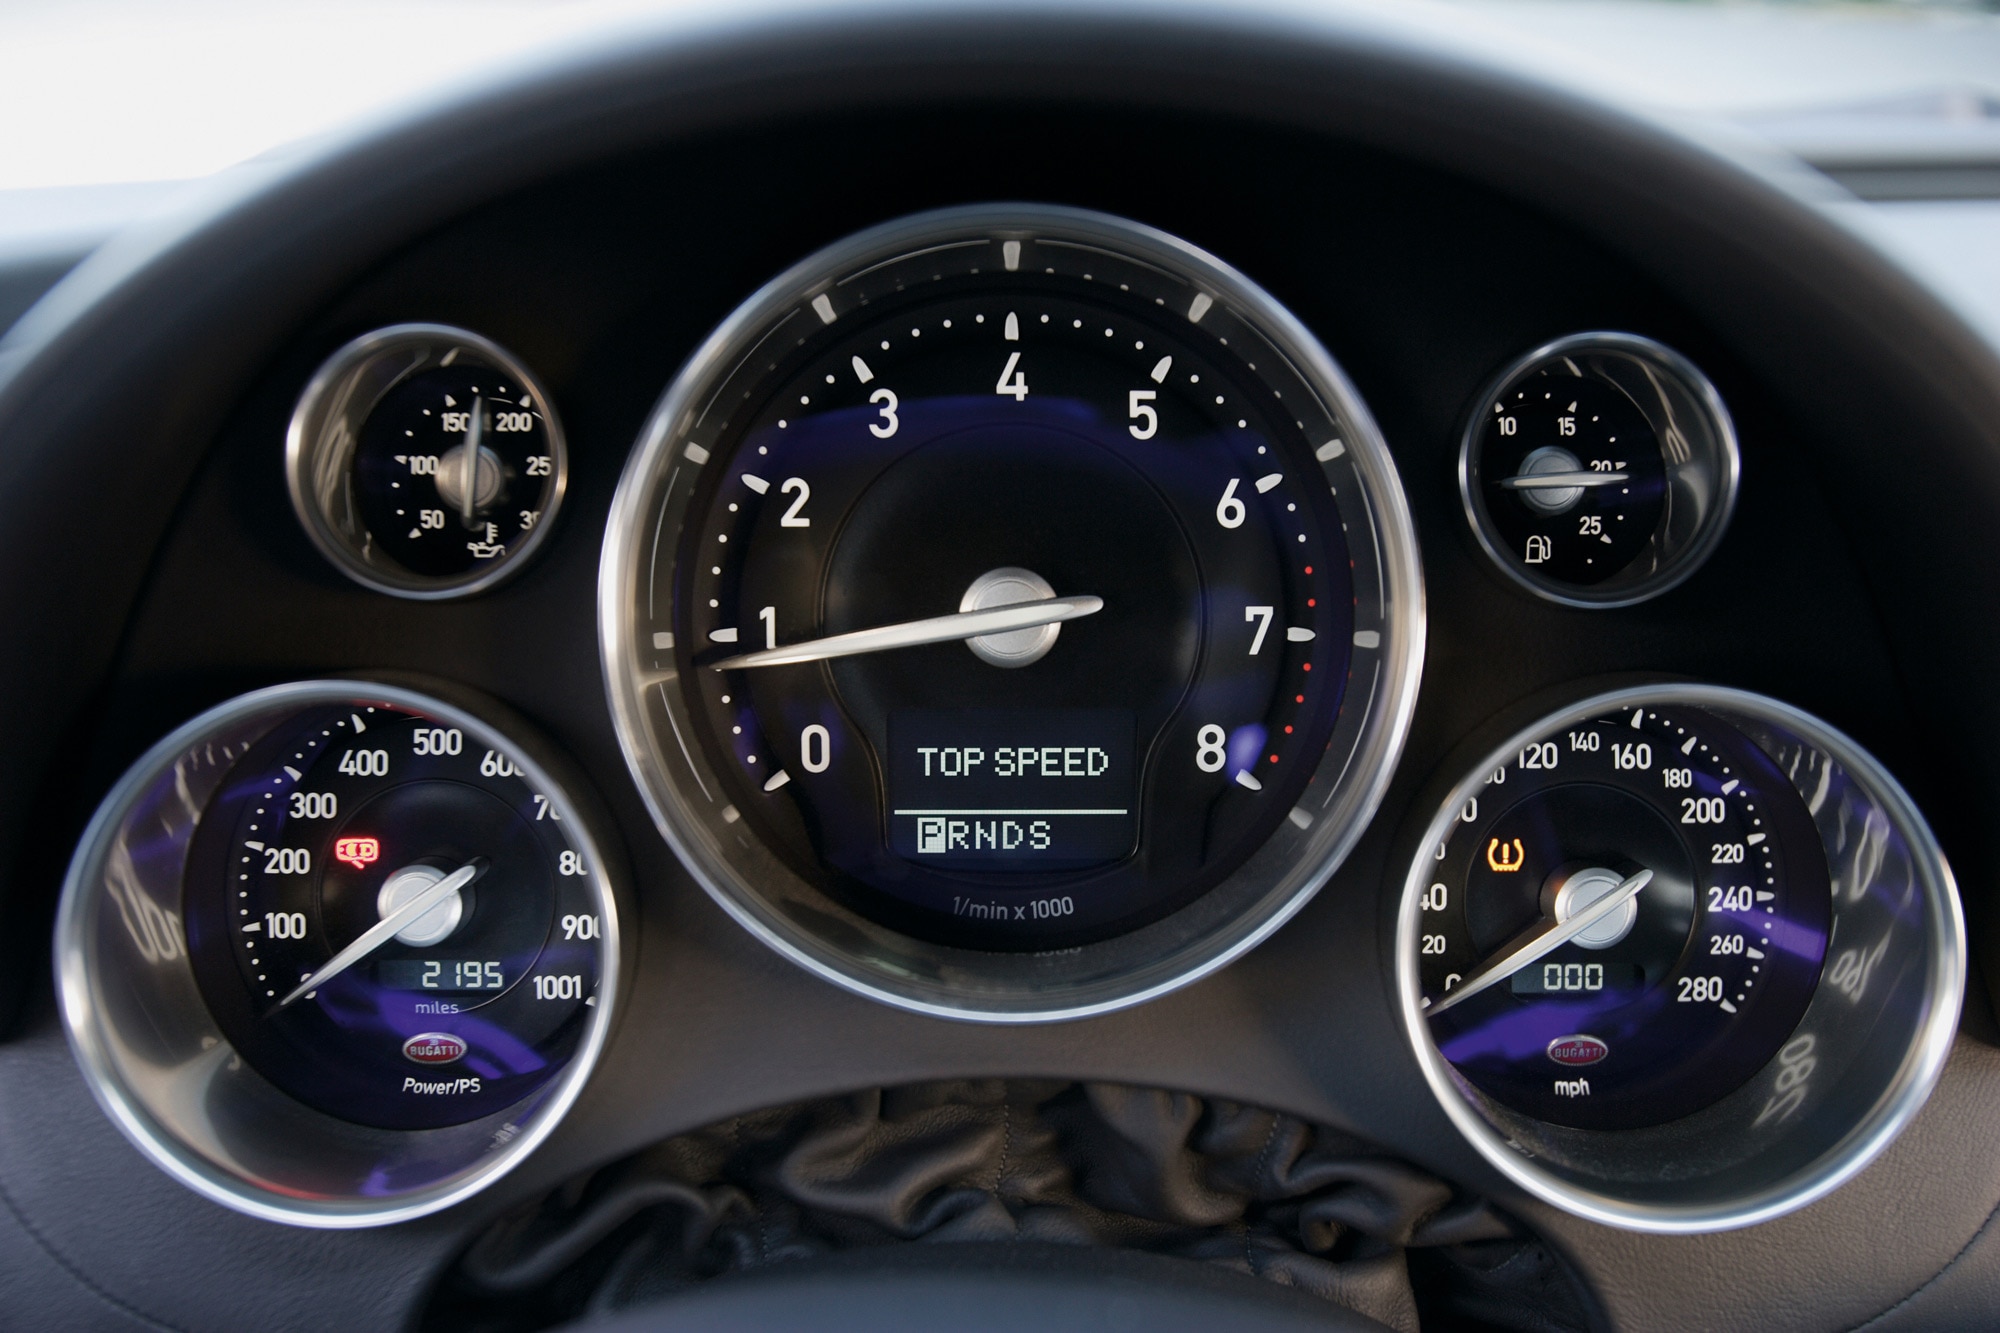 Instrument gauge cluster in a Bugatti Veyron